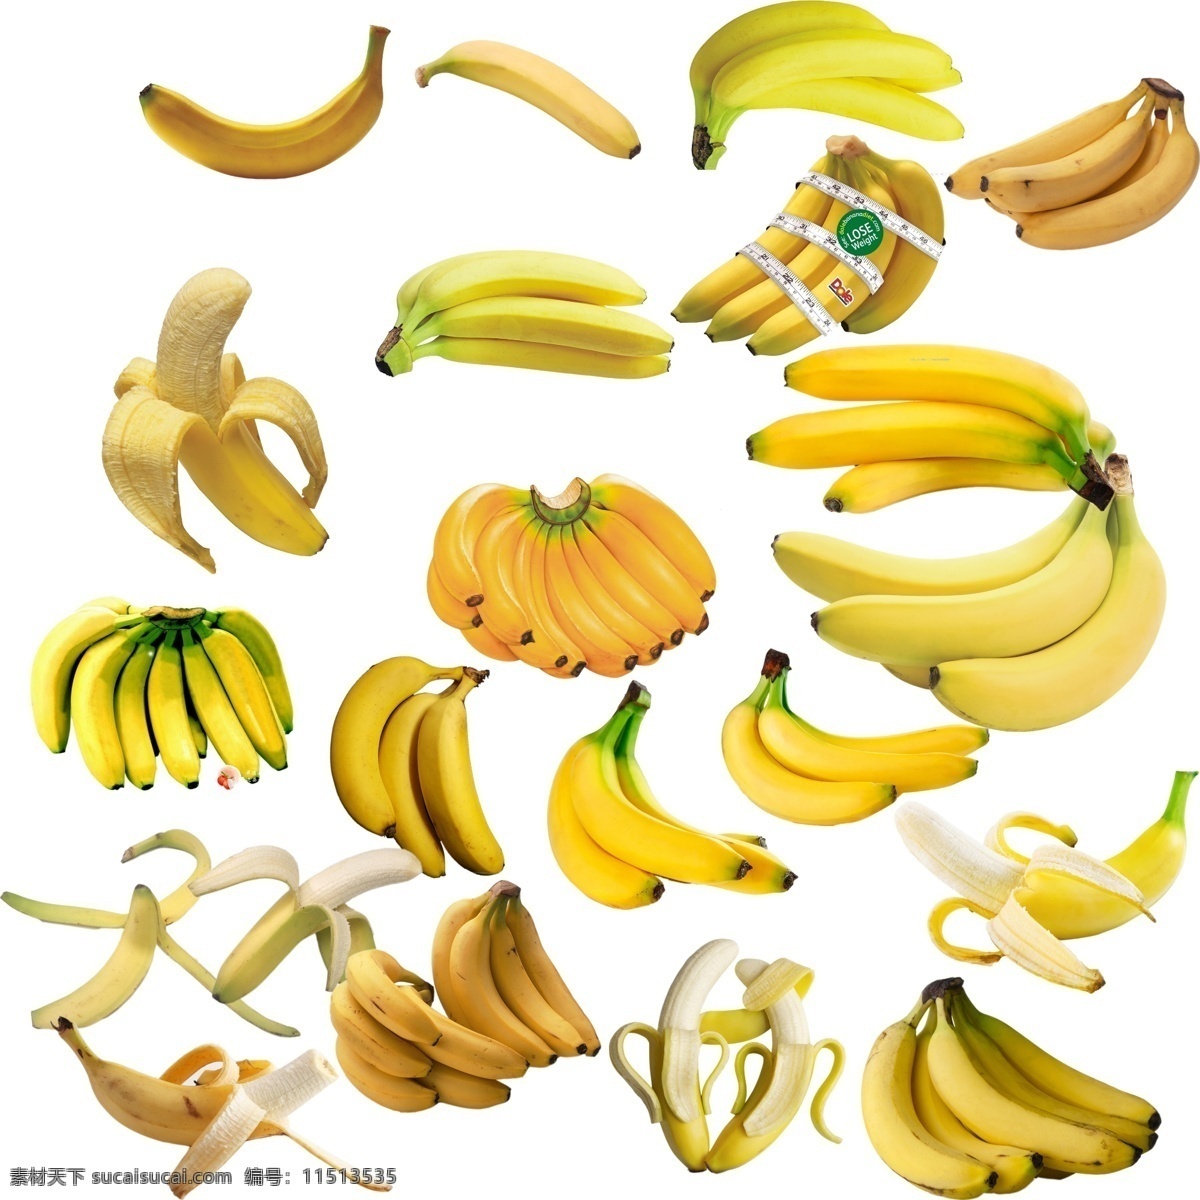 香蕉 大全 分层 香蕉大全 香蕉分层 香蕉皮 剥开的香蕉 一串香蕉 psd源文件